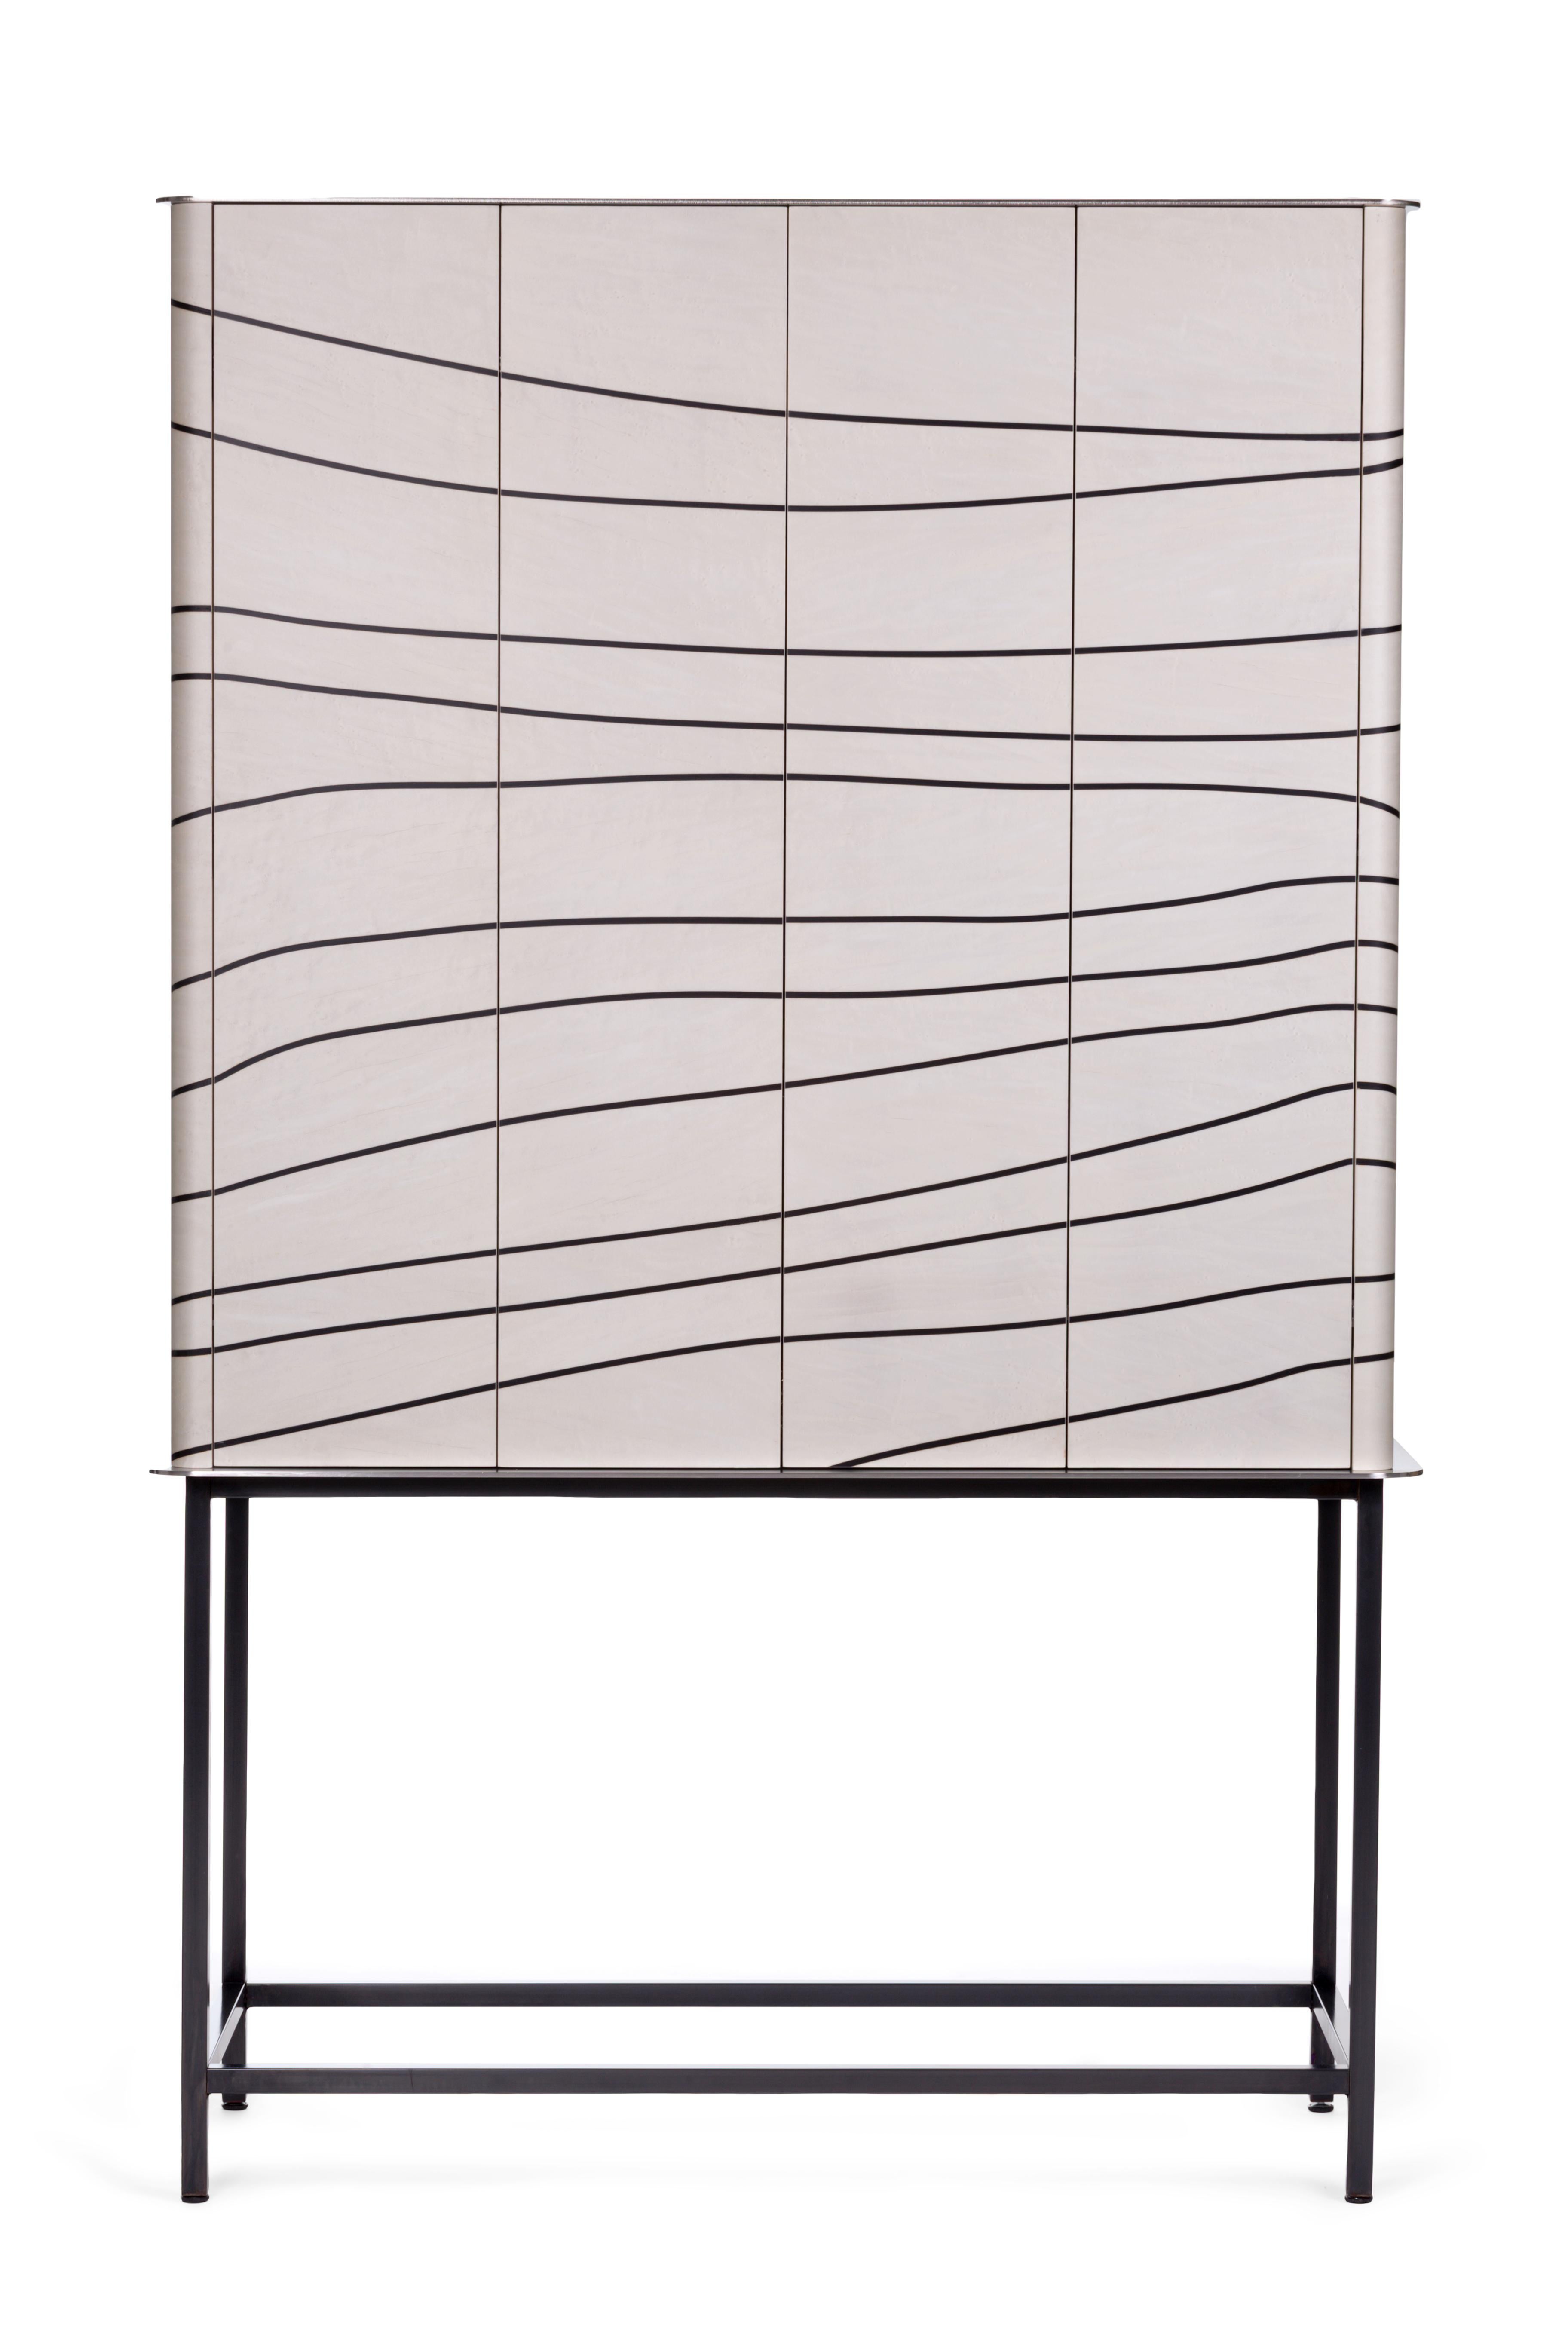 Inspiré d'anciens cabinets de luxe européens et retravaillé dans un style contemporain, le cabinet de salon Corde naît de l'idée de Stefano Trapani de créer un meuble moderne et raffiné en utilisant l'ancienne technique de la marqueterie de bois.